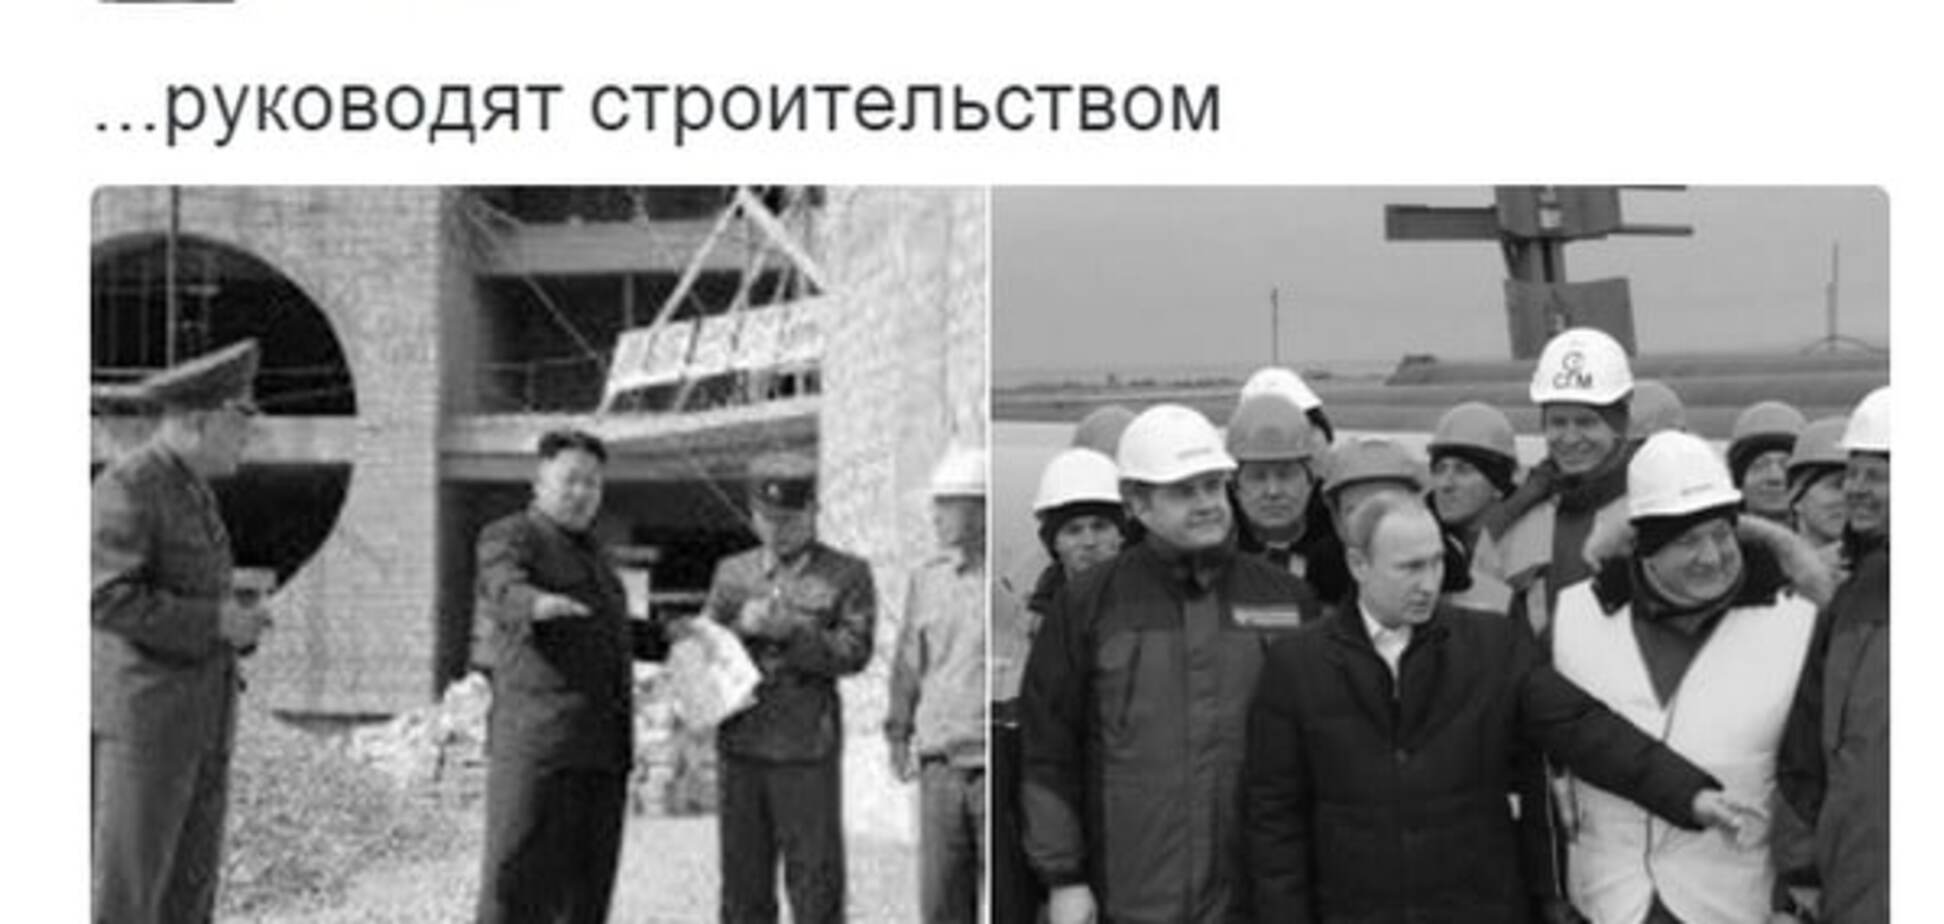 У Порошенка 'пожартували' над планами Путіна про будівництво моста в Крим